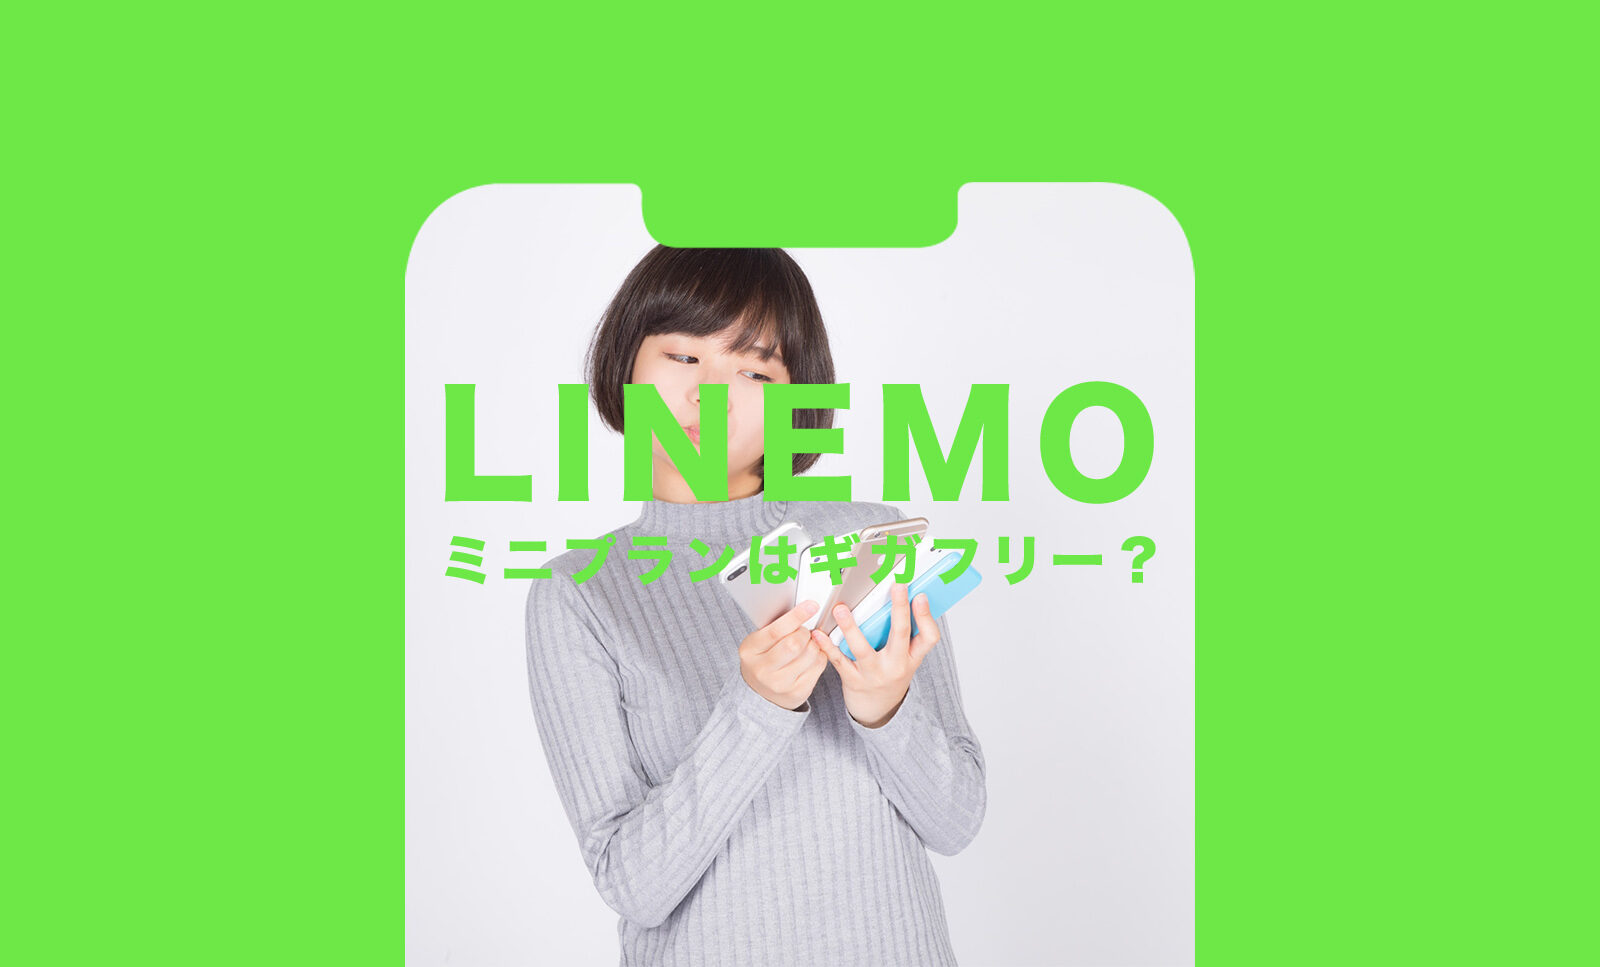 LINEMO(ラインモ)のミニプランはLINEギガフリーの対象になる？のサムネイル画像